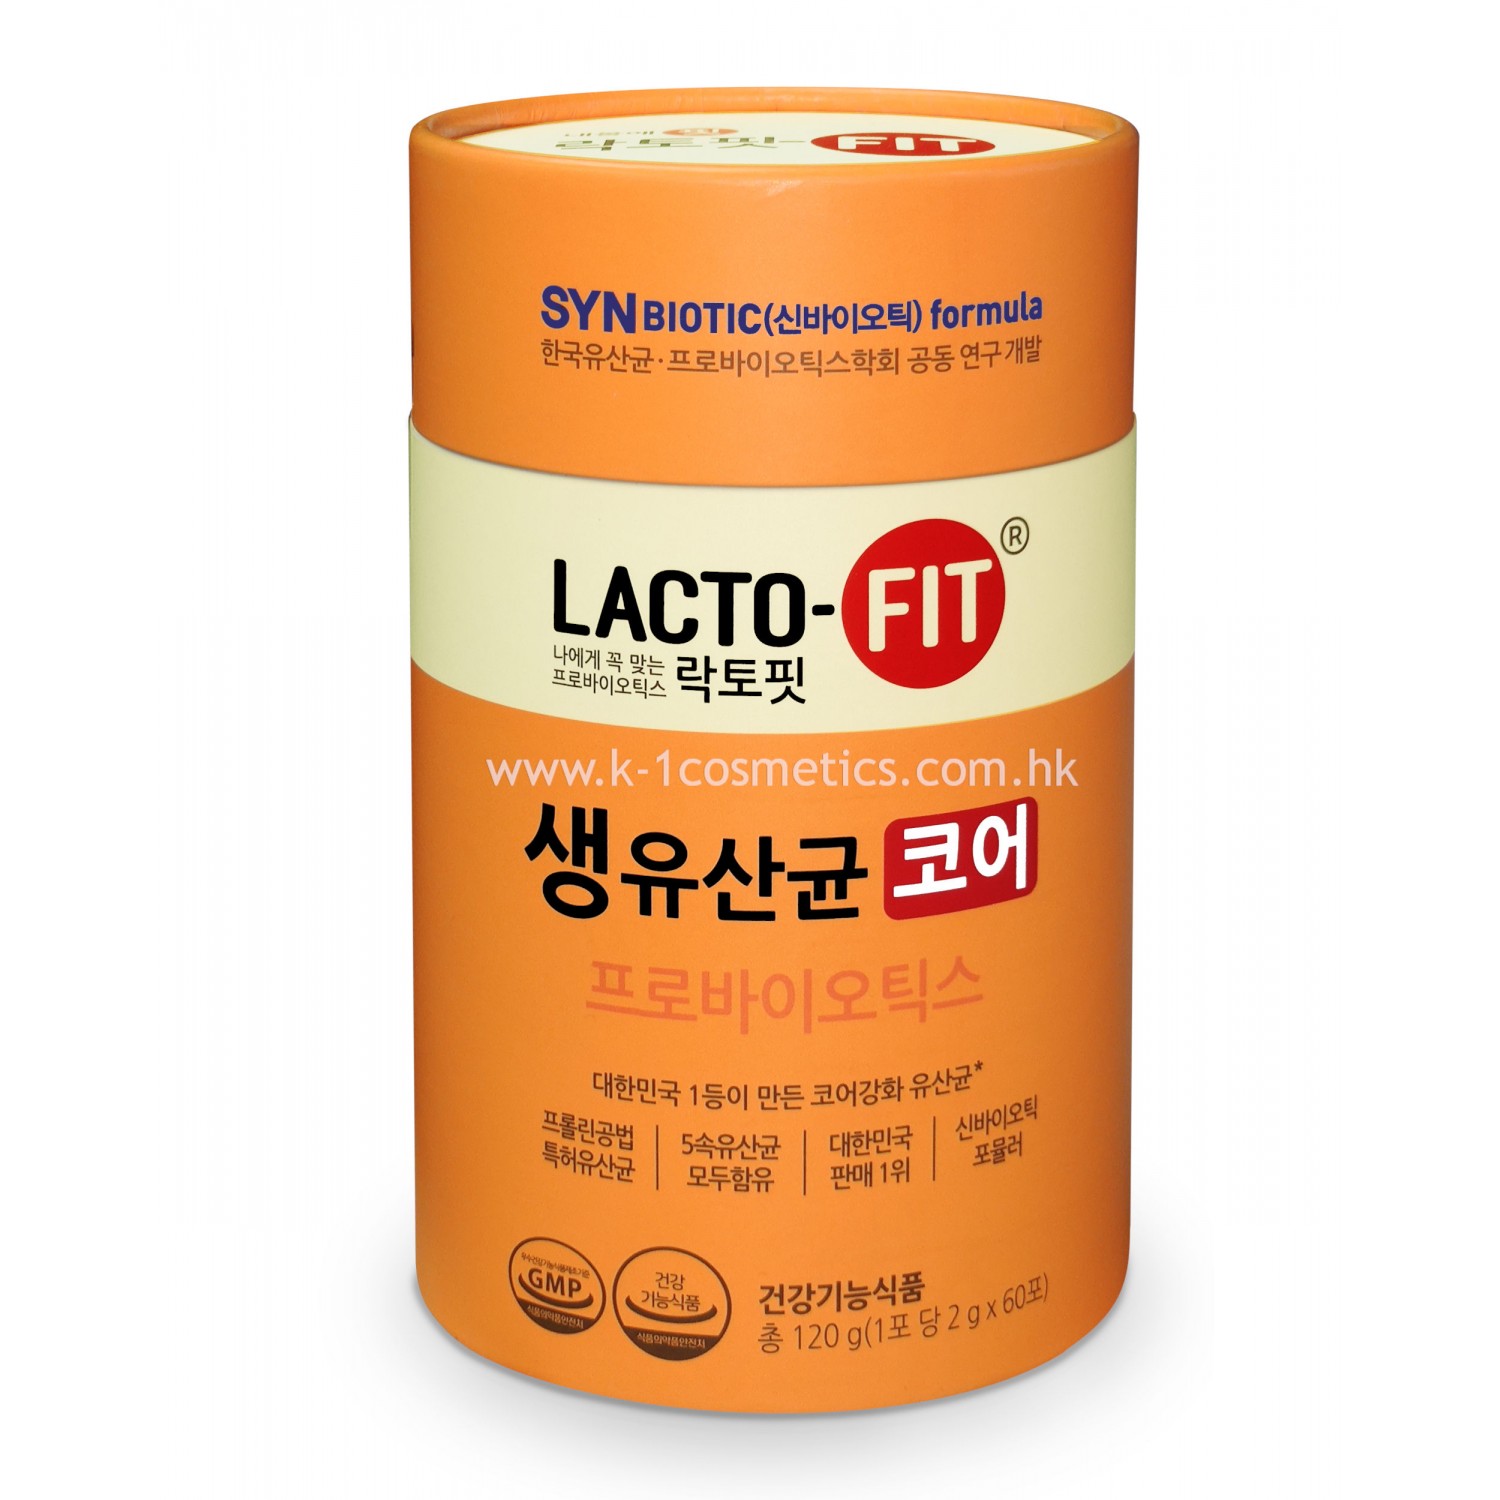 鍾根堂 Lacto- Fit 益生菌增強版 120g (2g X 60條)